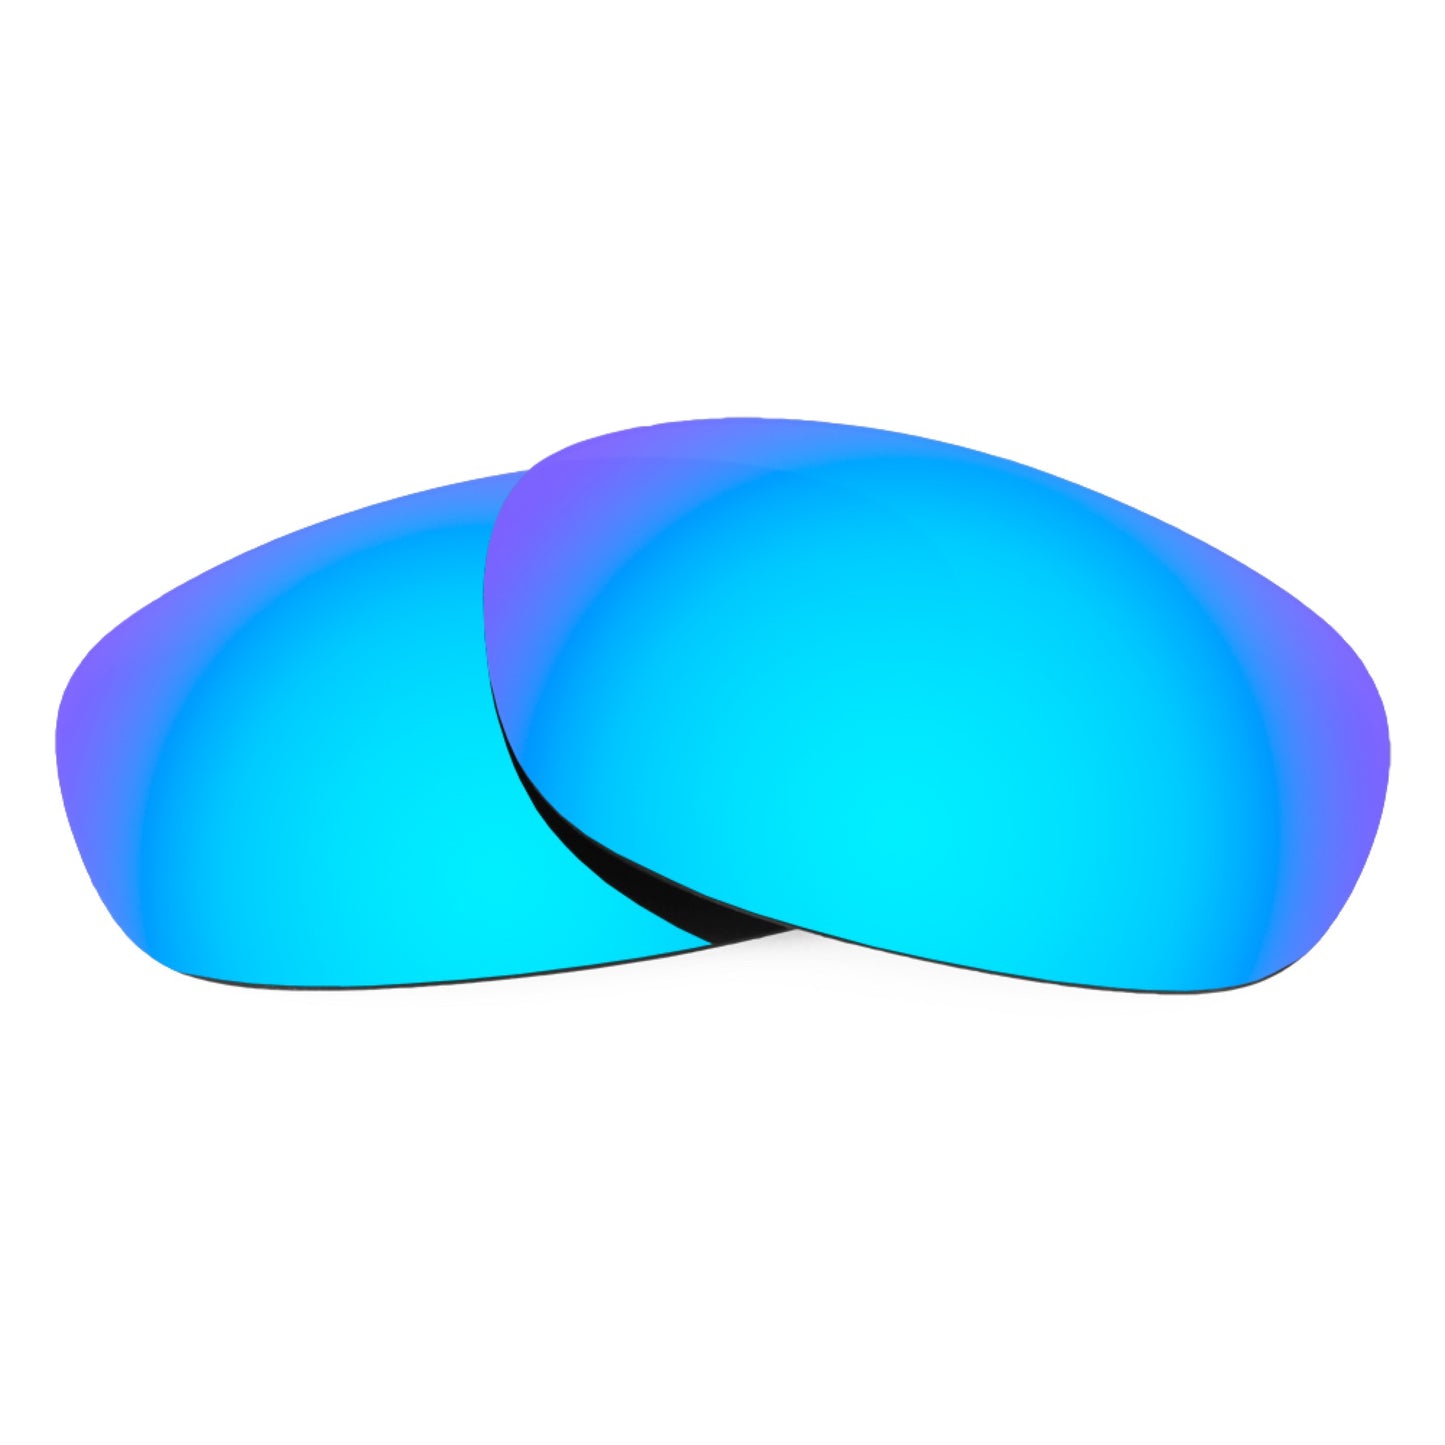 Revant replacement lenses for Maui Jim Guy Harvey Sailfish MJ233 Non-Polarized Ice Blue